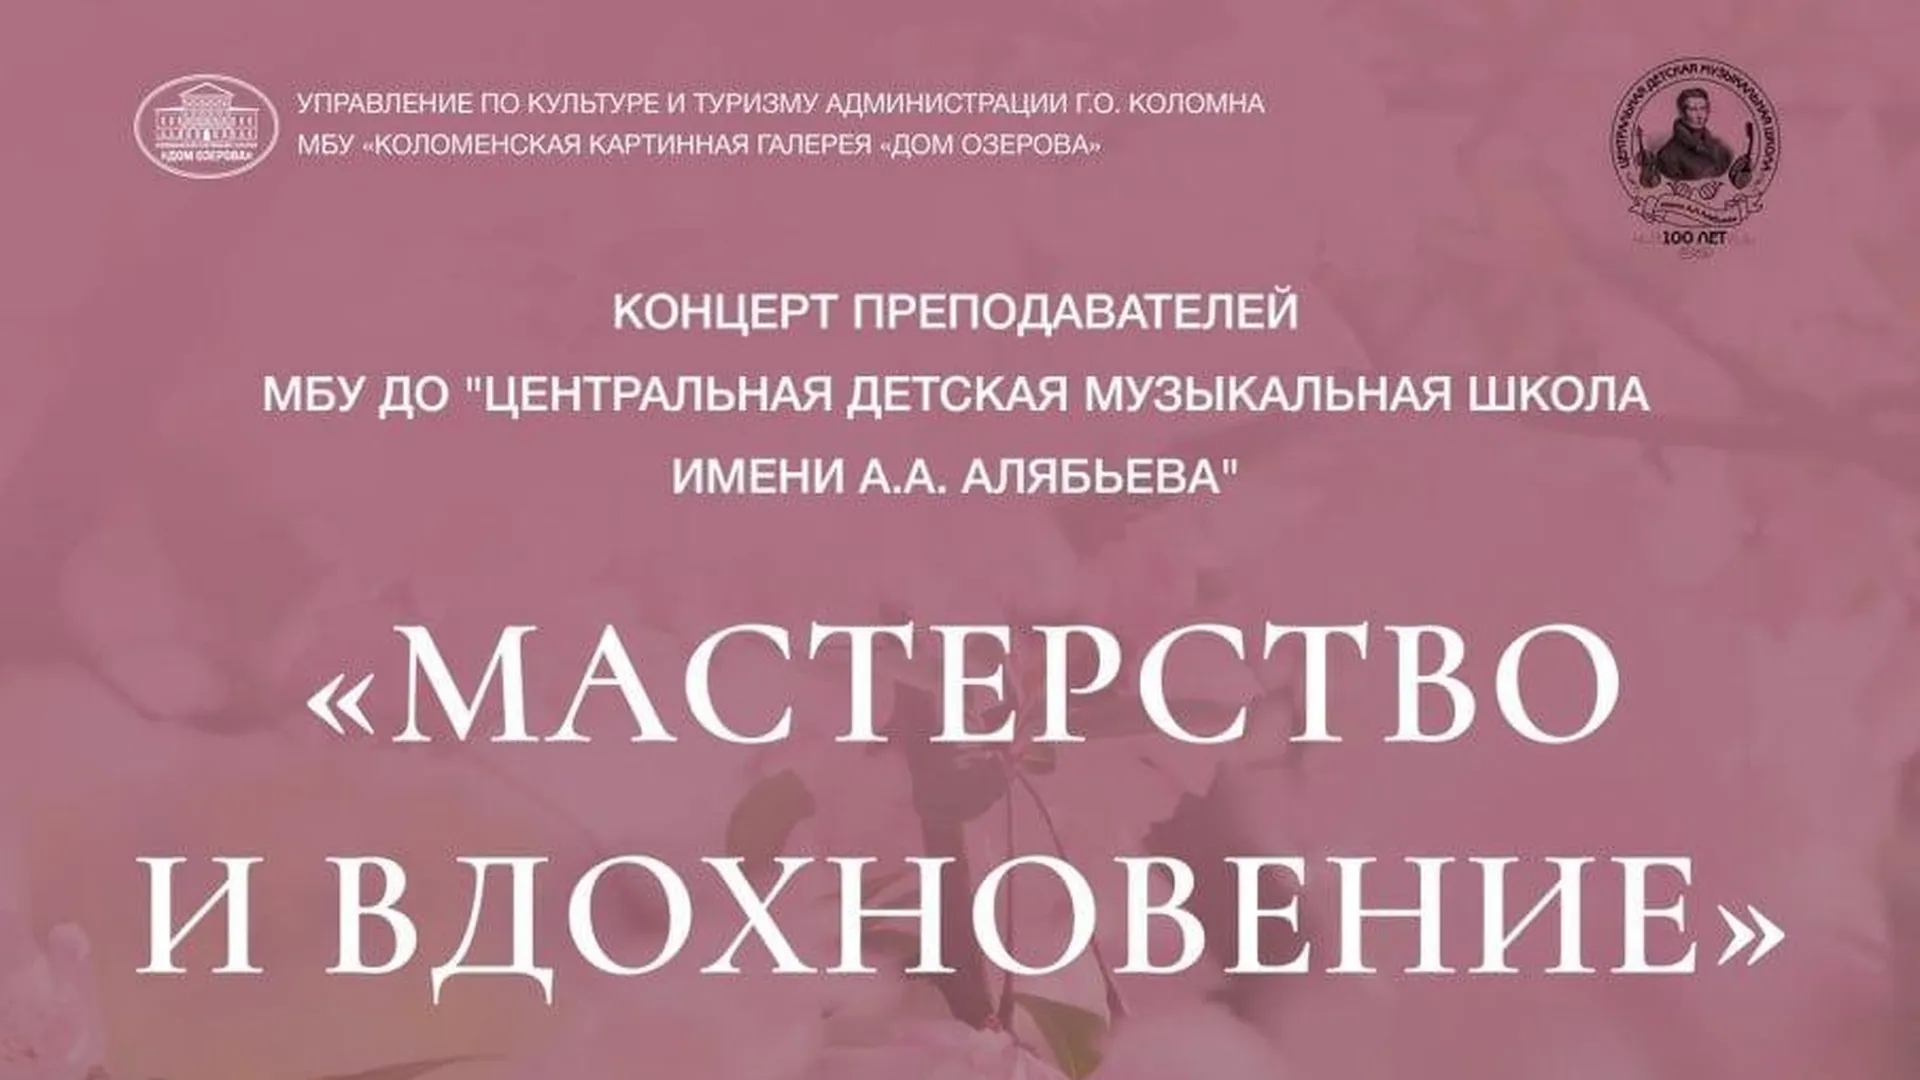 Галерея Коломны в среду приглашает всех желающих на концерт «Мастерство и вдохновение»